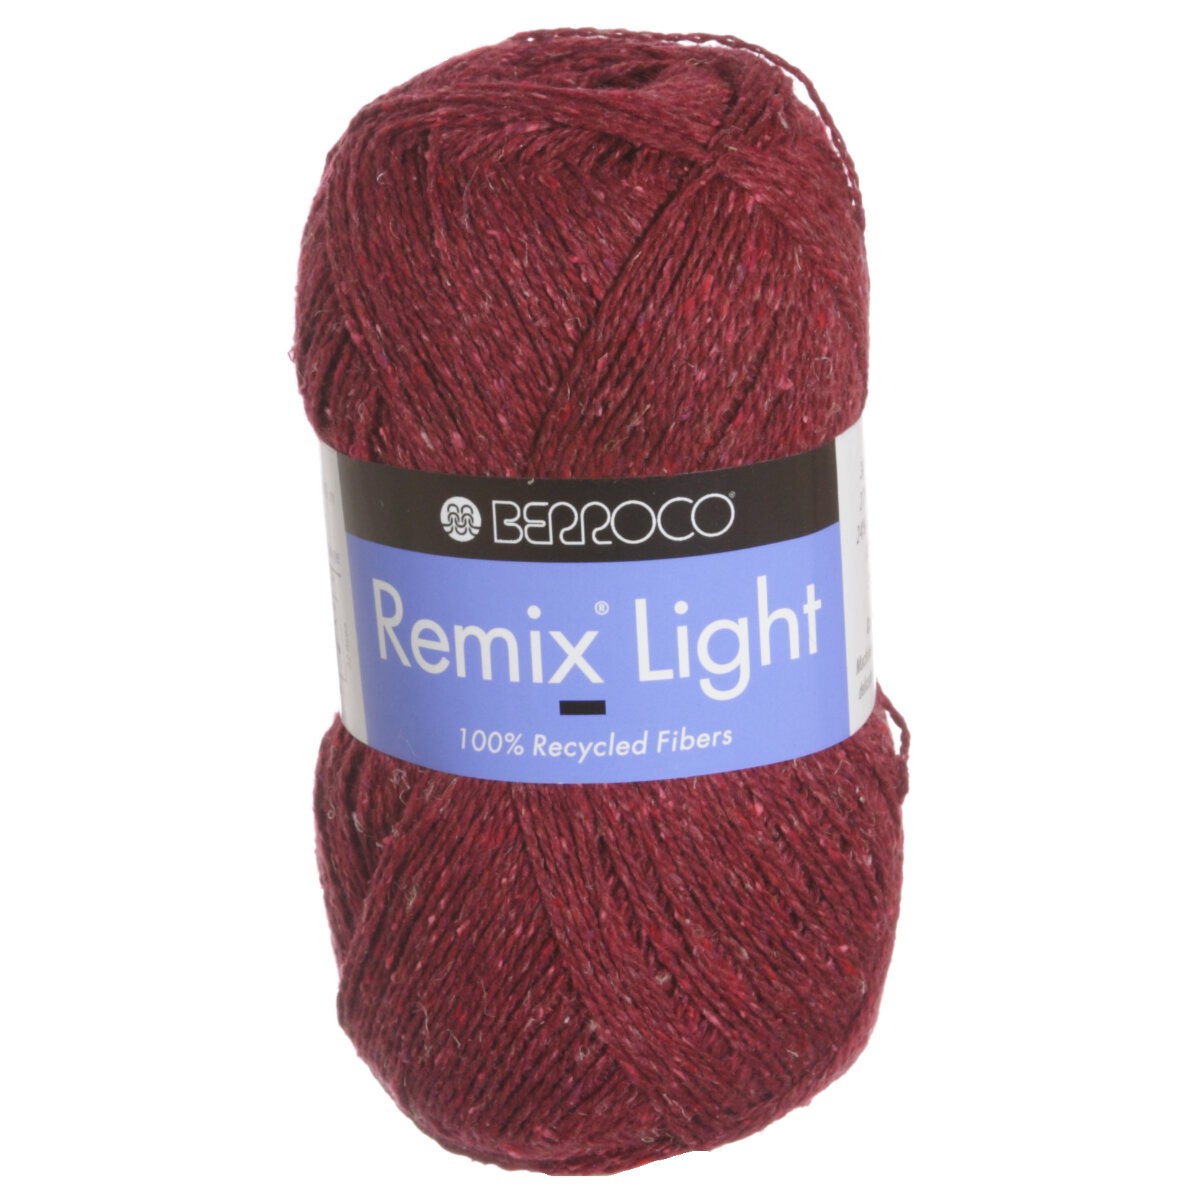 Berroco Remix Light Yarn - 6960 Strawberry at Jimmy Beans Wool